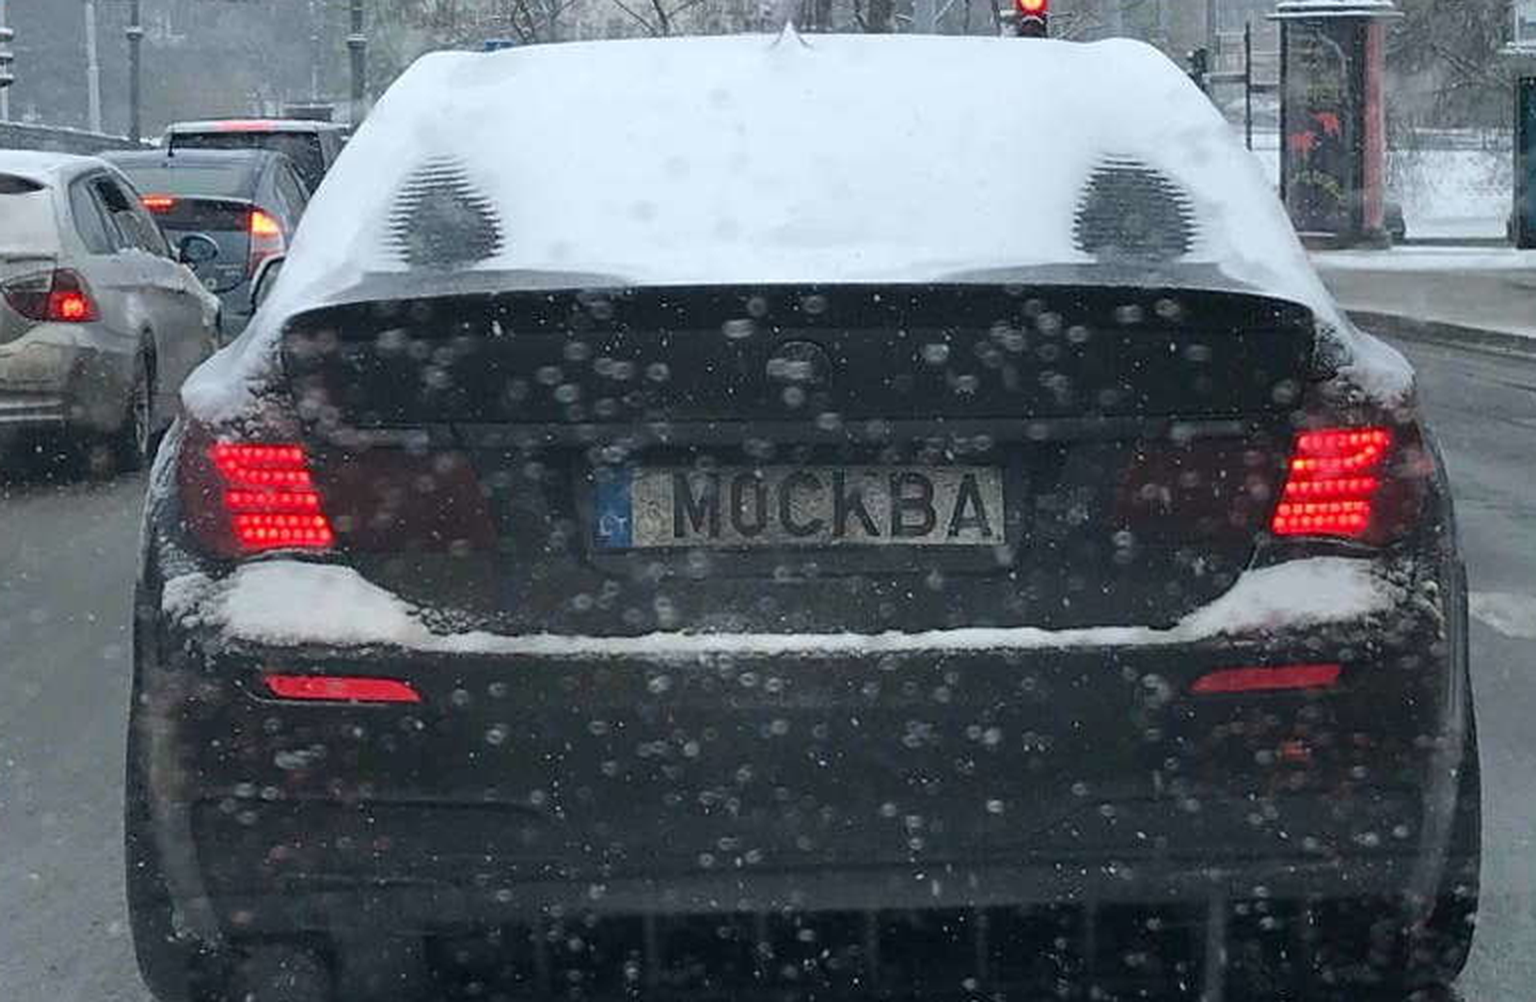 Автомобиль с номерными знаками, связанными с РФ. Литва